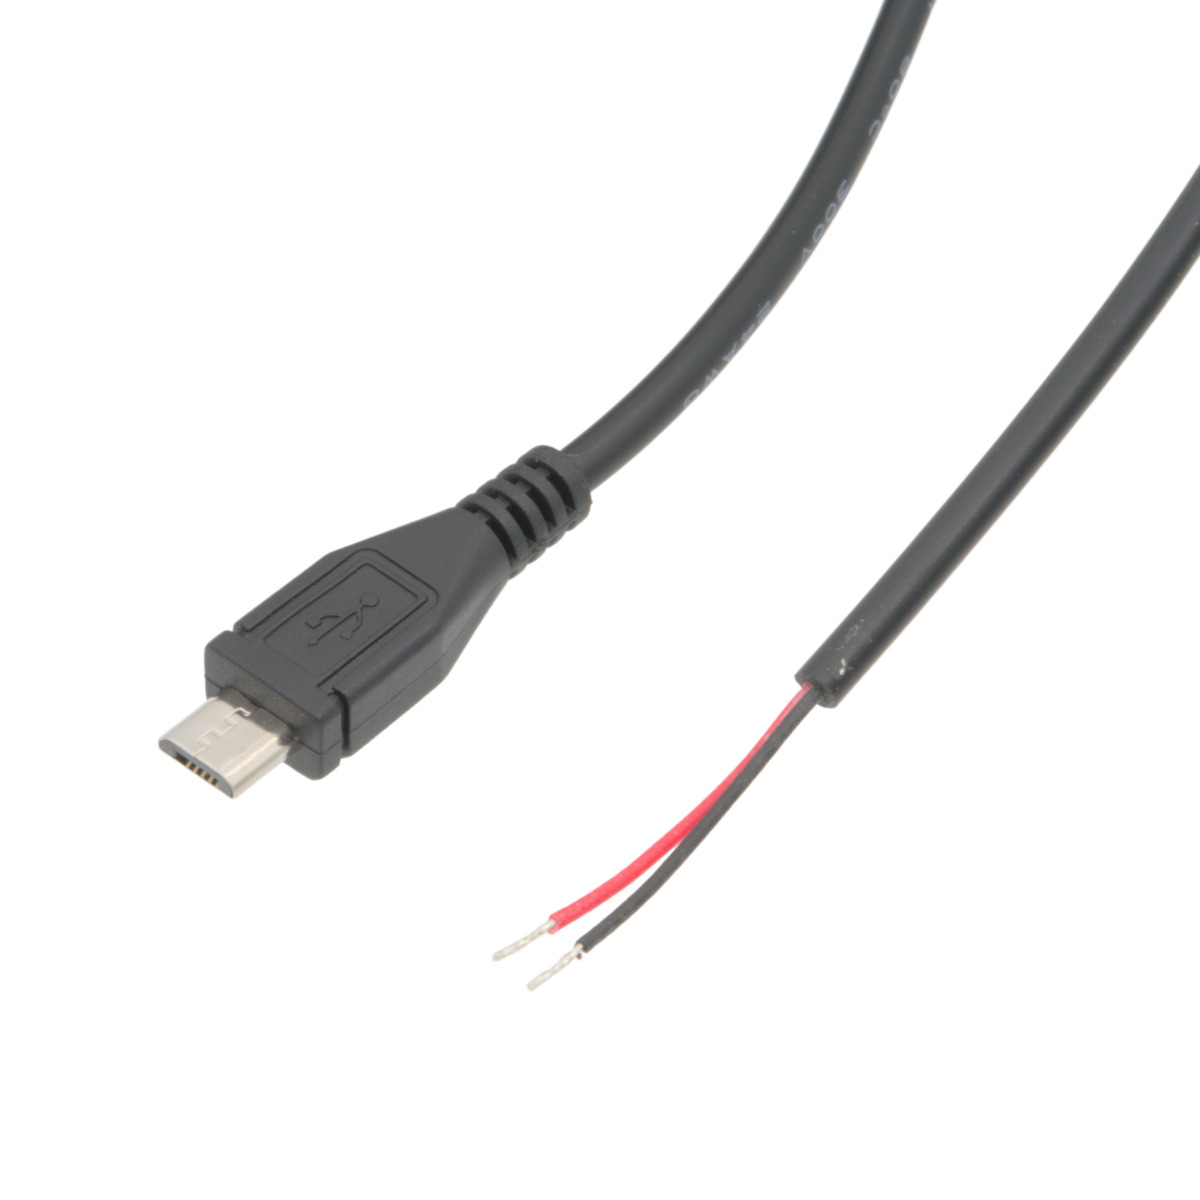 Micro USB alimentation uniquement (2 broches connectées) vers Libre, LSZH 4m